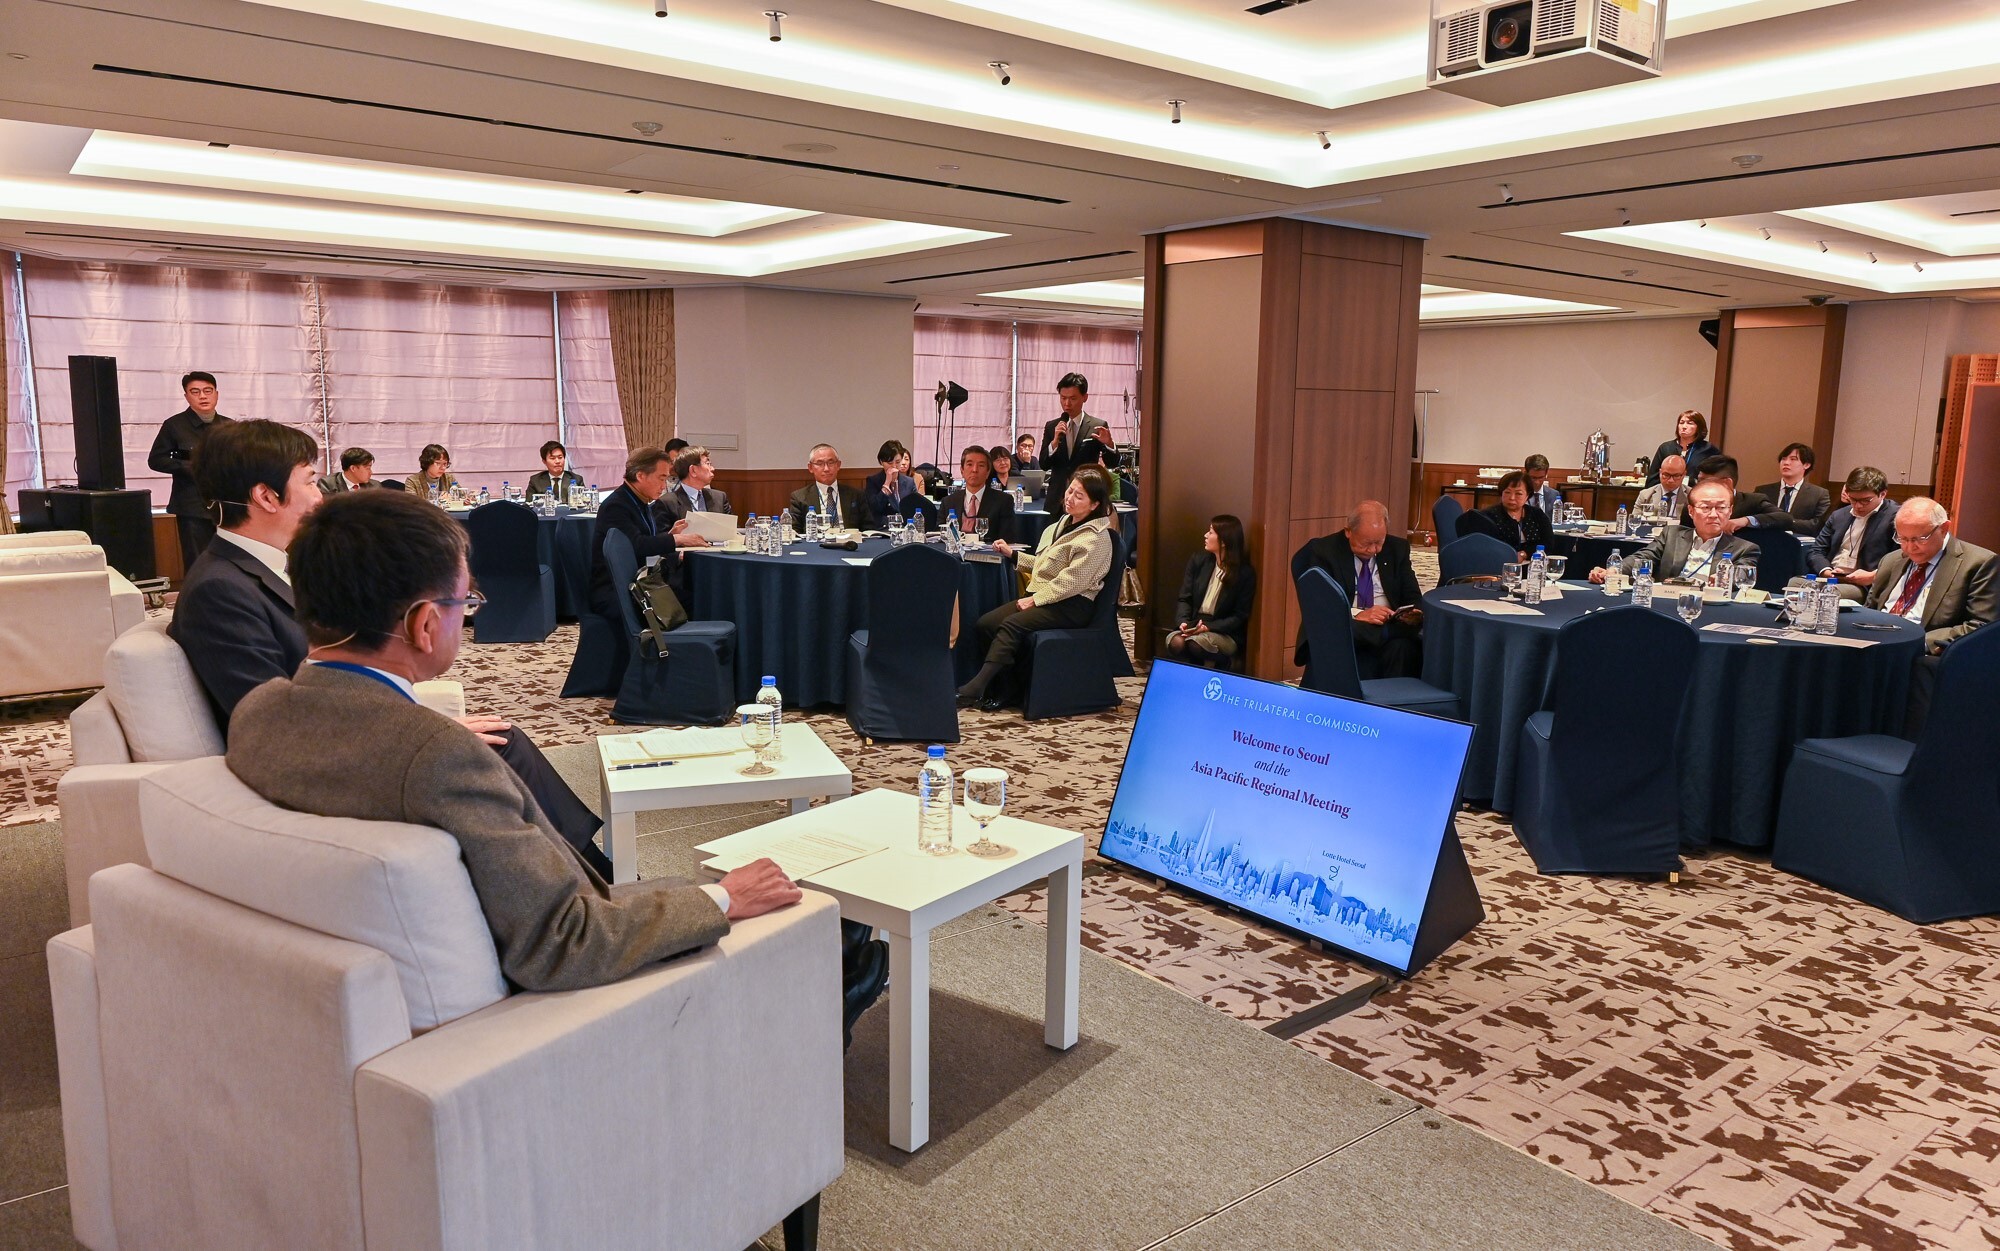 三極委員会アジア太平洋委員会ソウル地域会合、スペシャルセッションの様子。